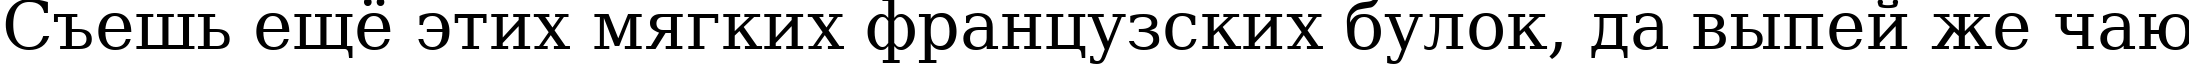 Пример написания шрифтом DejaVu Serif текста на русском